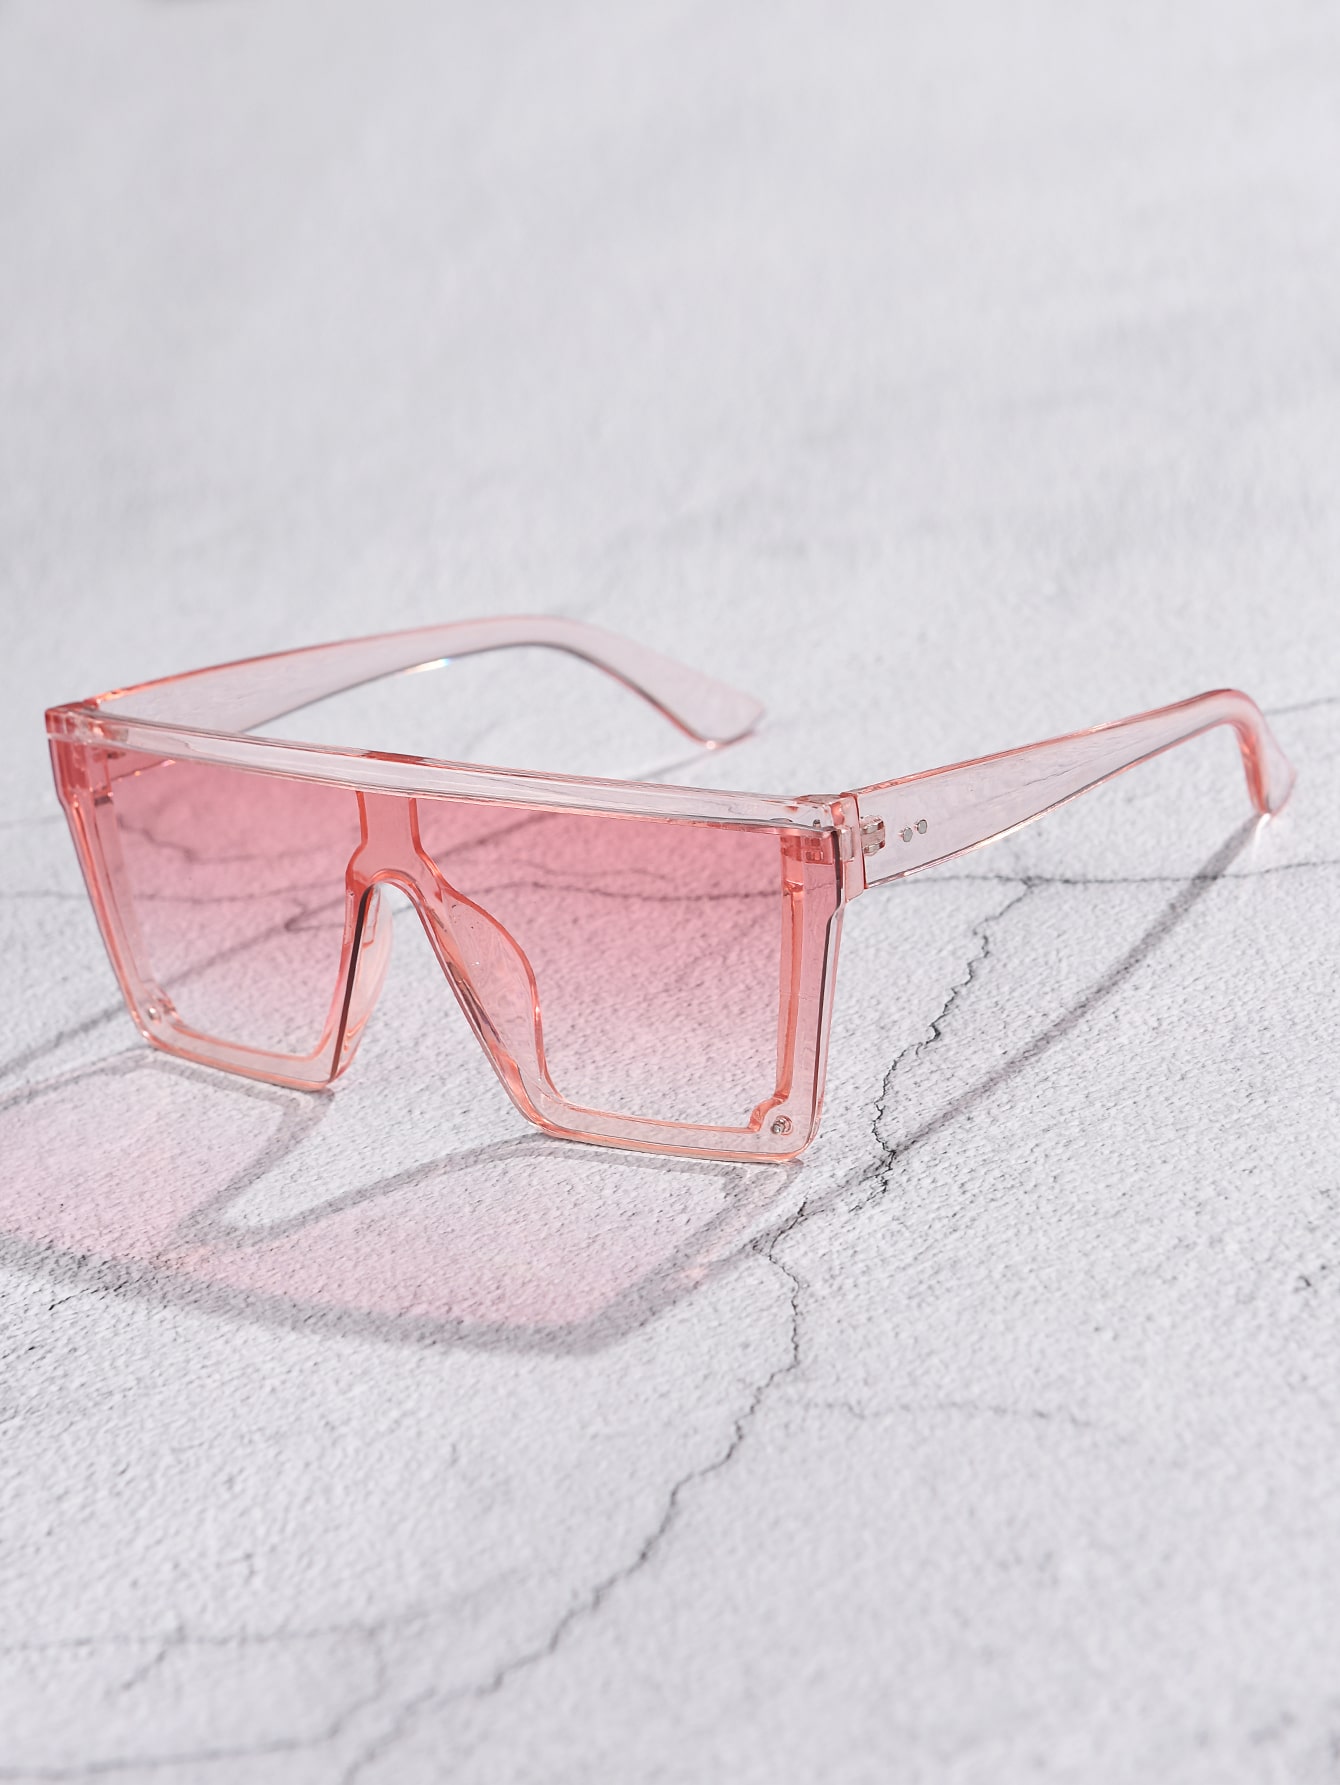 1 шт. пластиковые квадратные украшенные модные солнцезащитные очки 1 шт пластиковые держатели для очков 4 пары